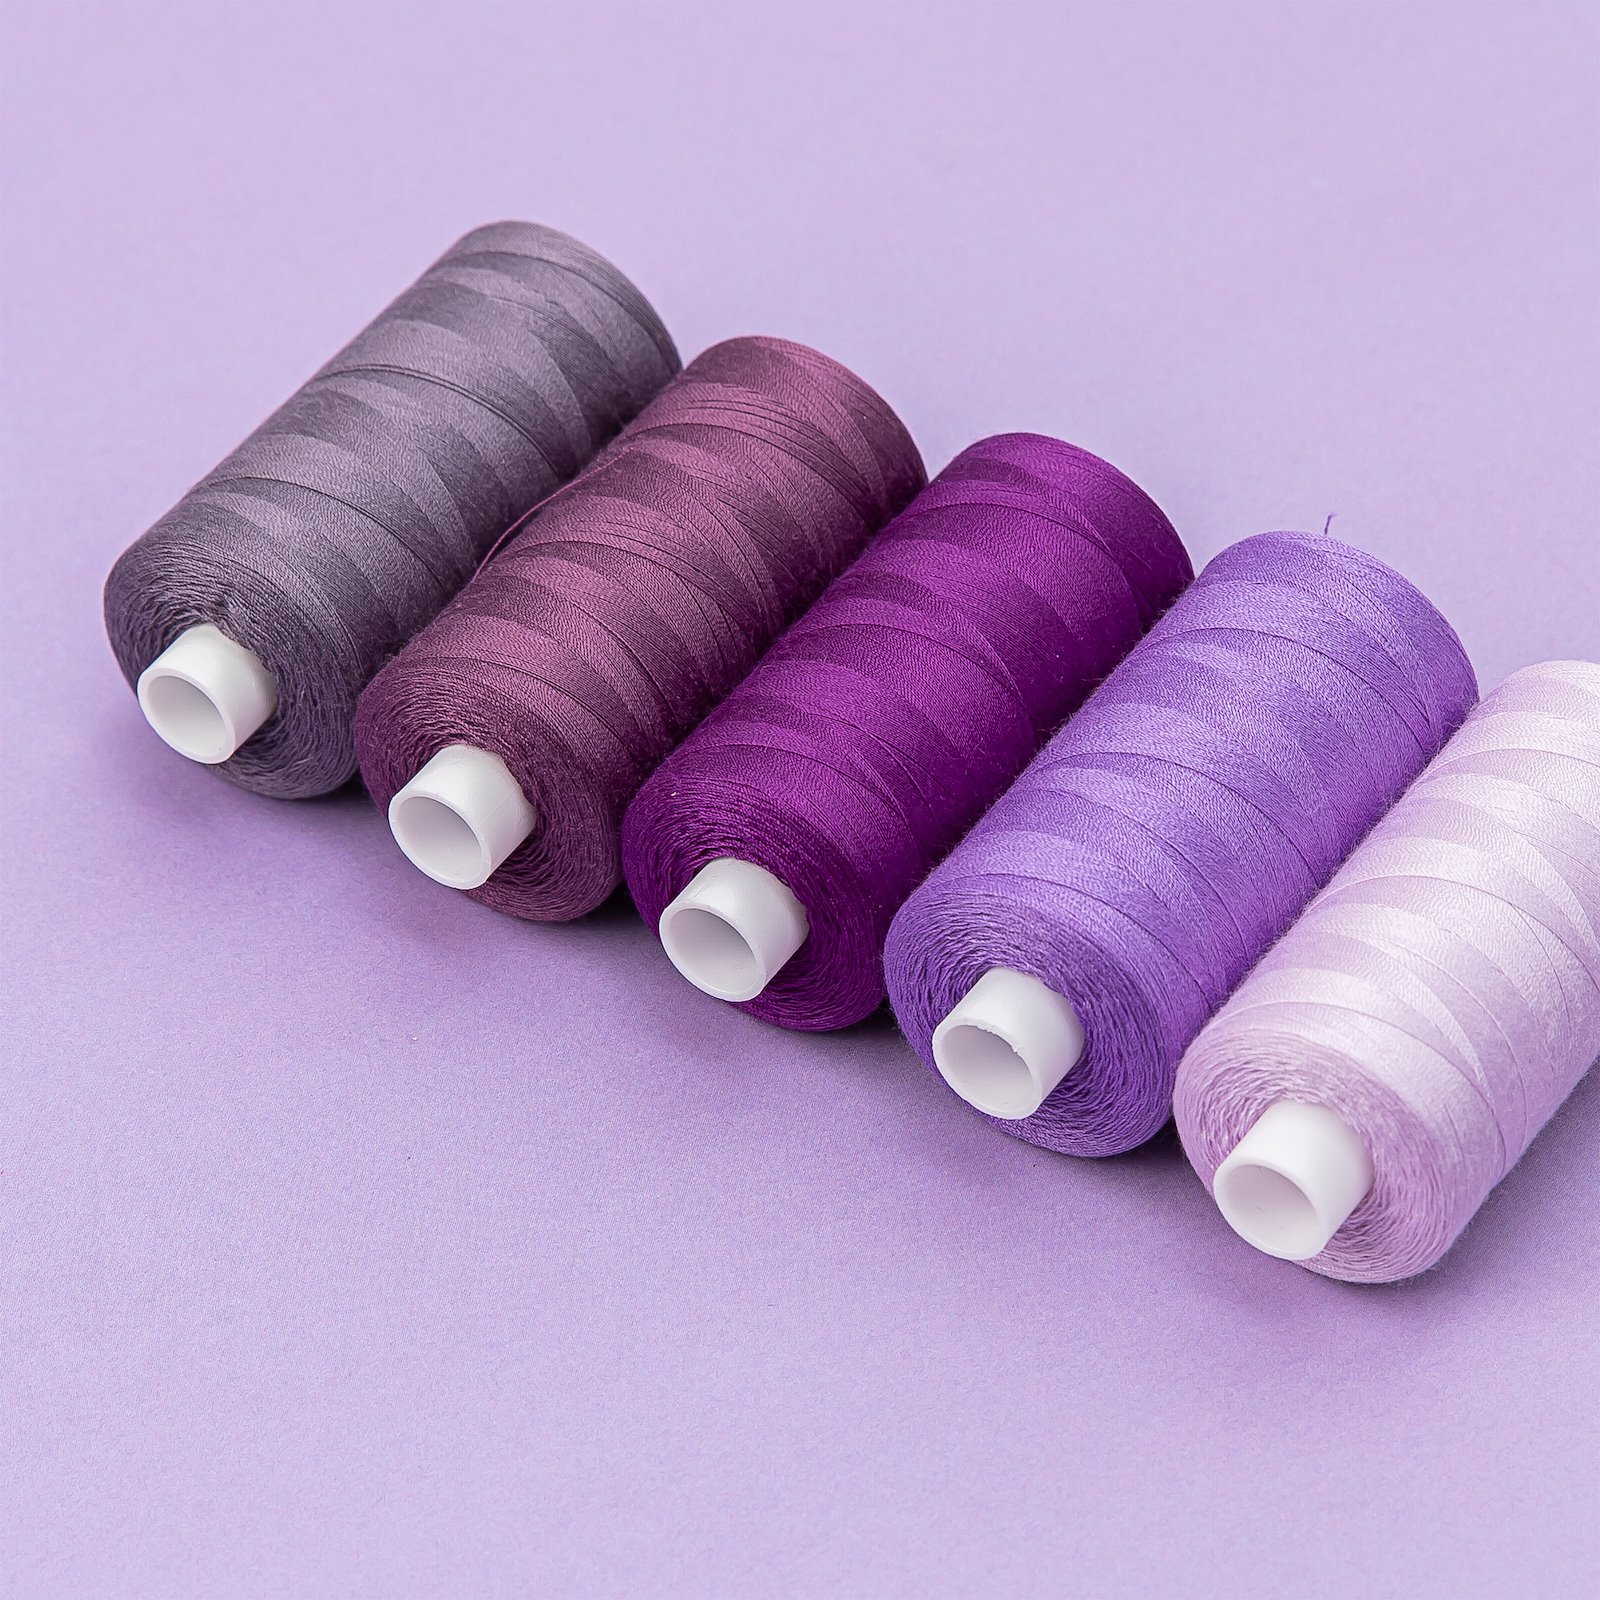 Sewing thread lilac 1000m 12048_12069_12089_12070_12108_bundle